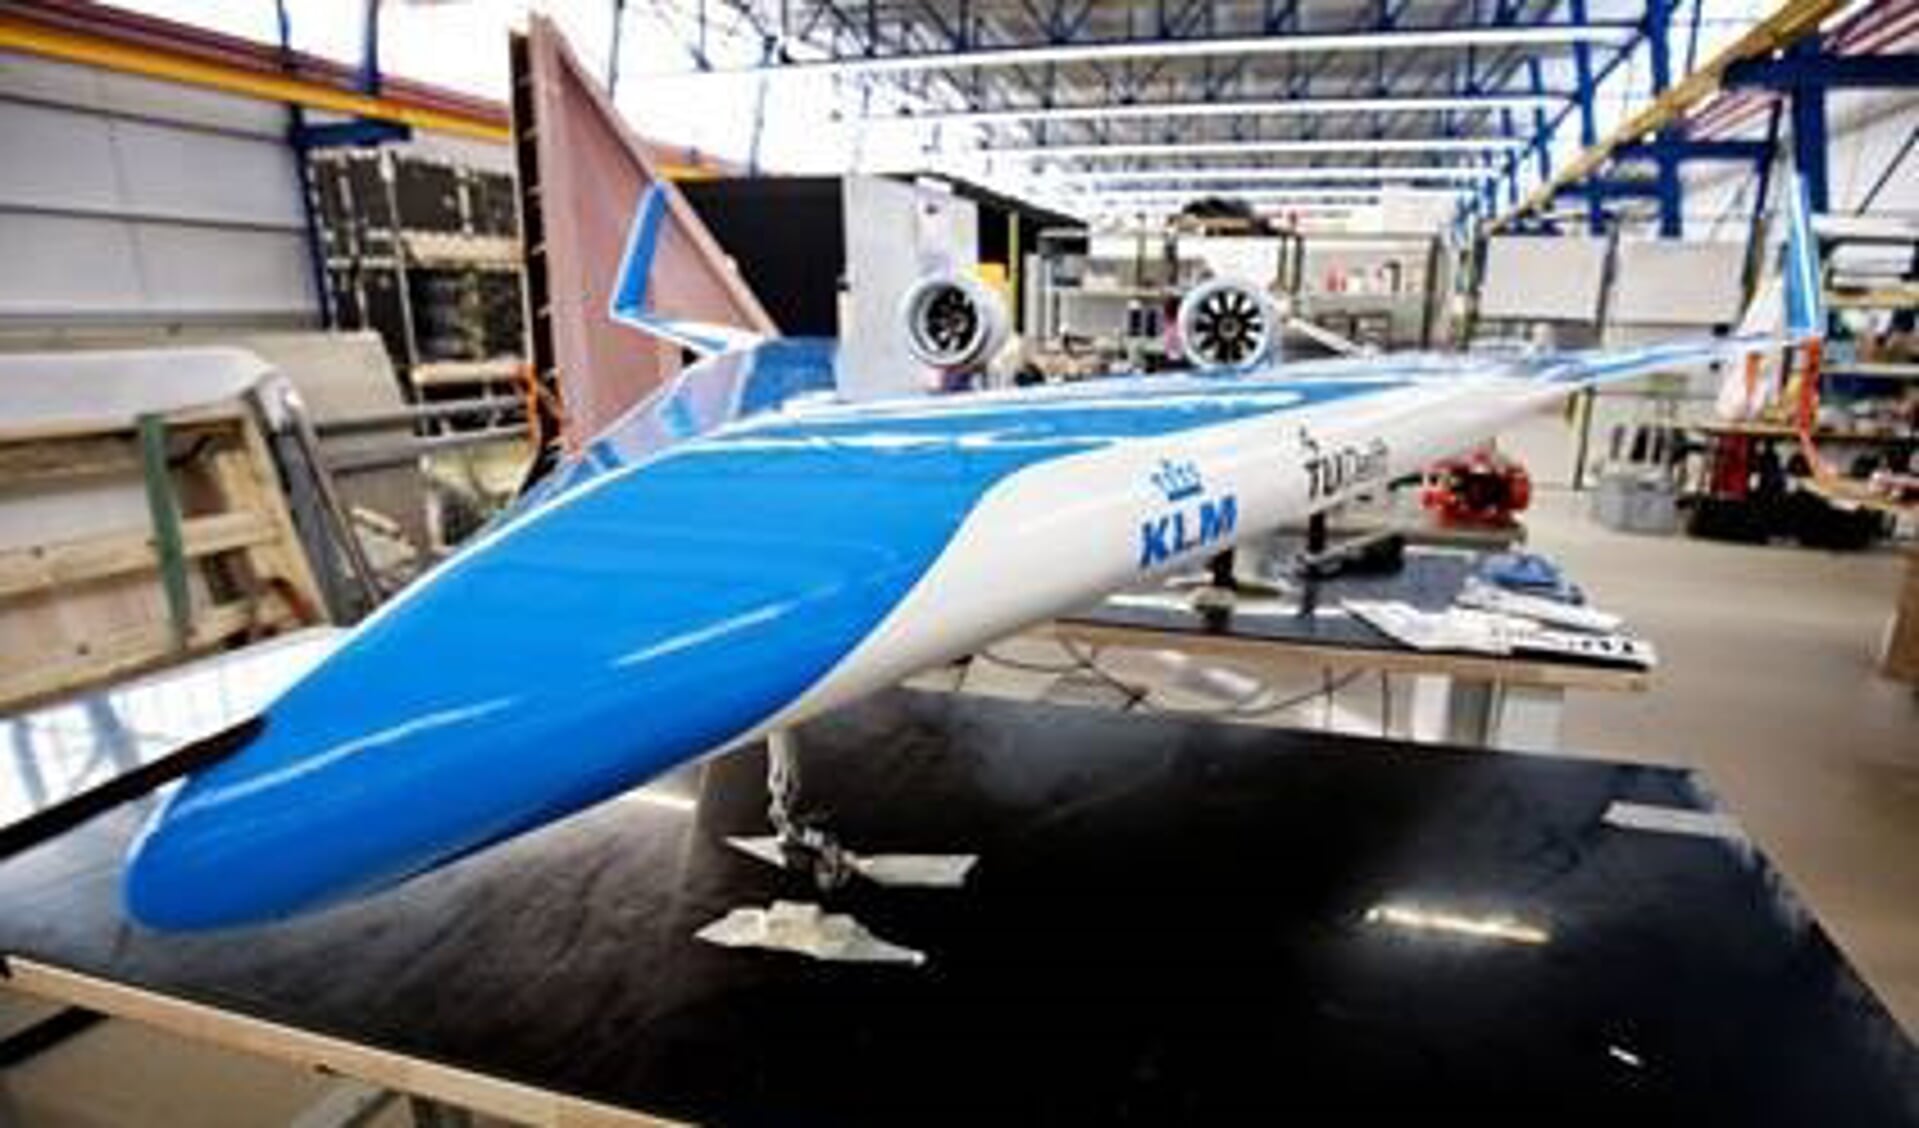 De door studenten van de TU Delft ontworpen Flying-V